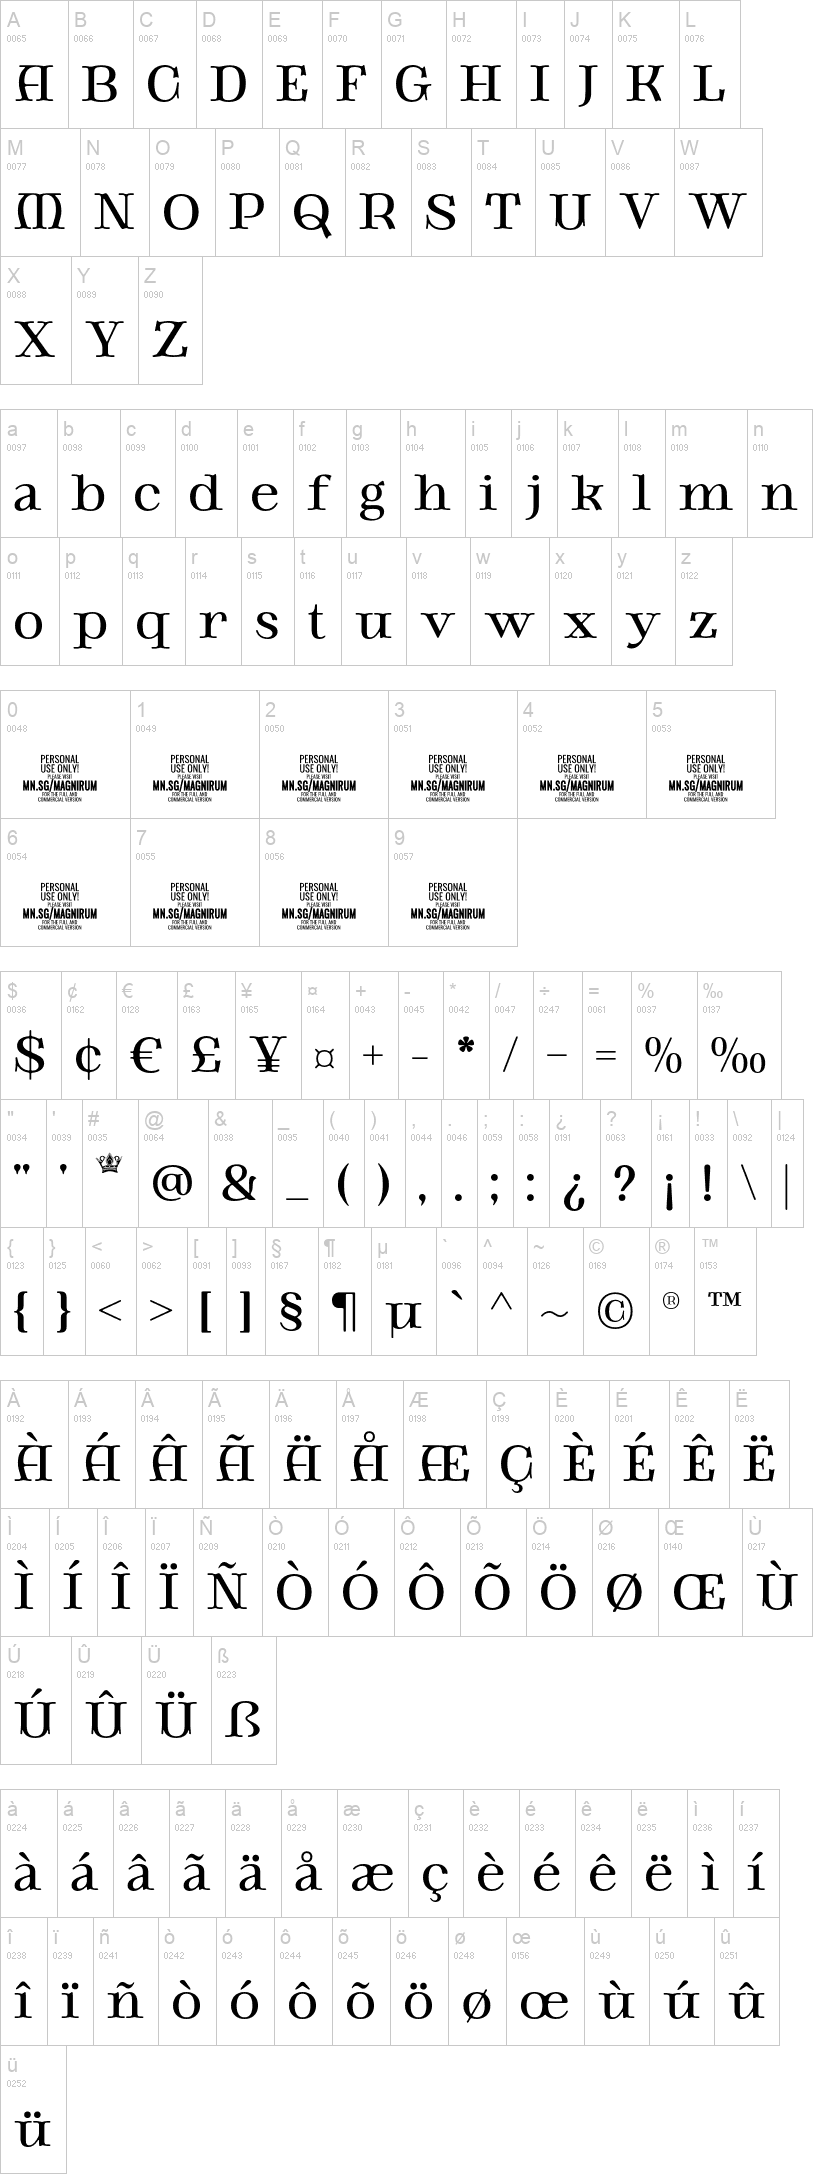 Magnirum Serif